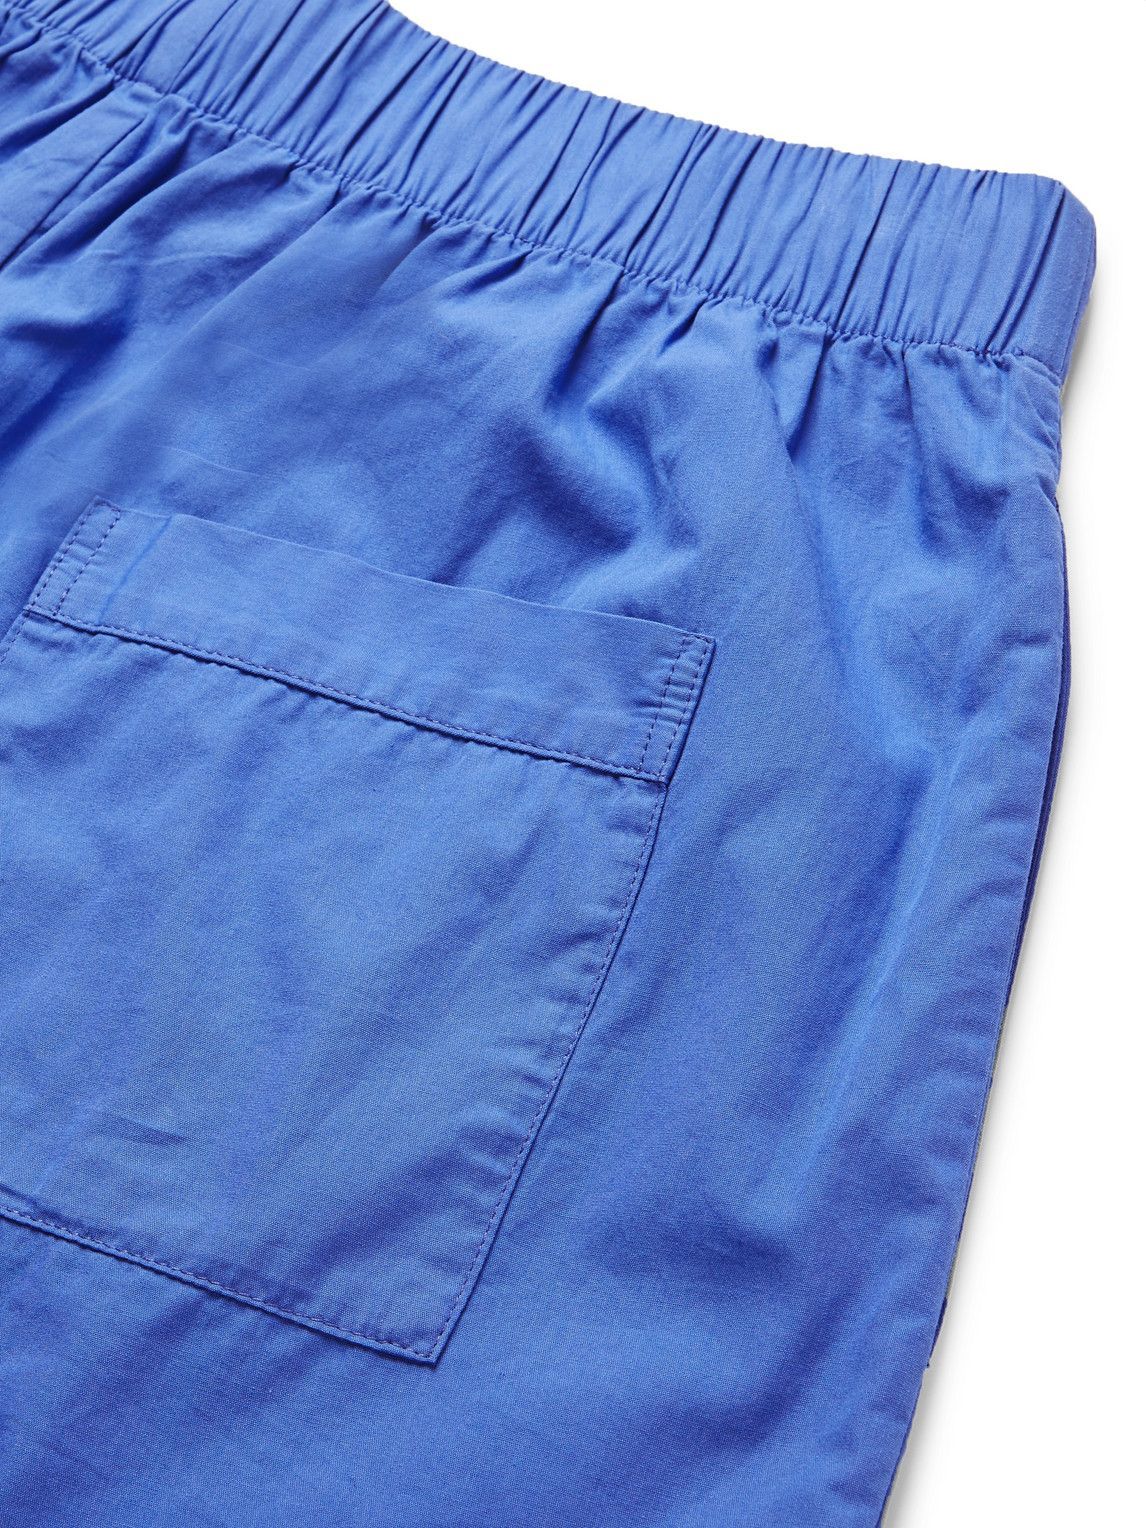 TEKLA - Organic Cotton-Poplin Pyjama Shorts - Blue Tekla Fabrics